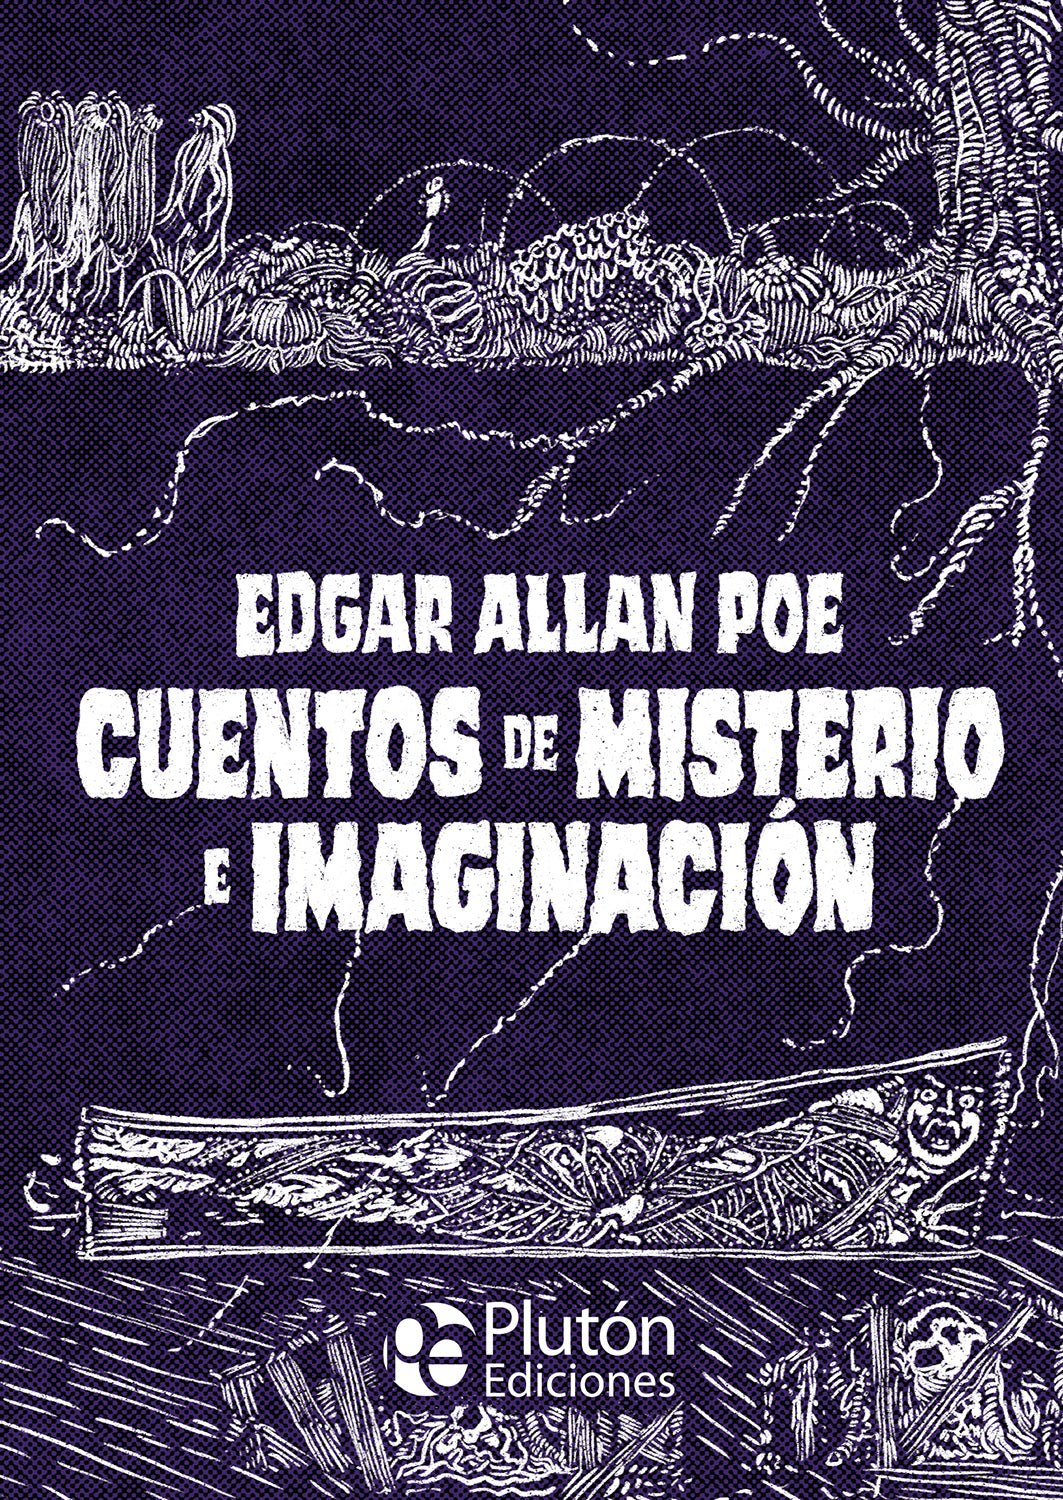 Clásicos Ilustrados Platino Cuentos Edgar A. Poe